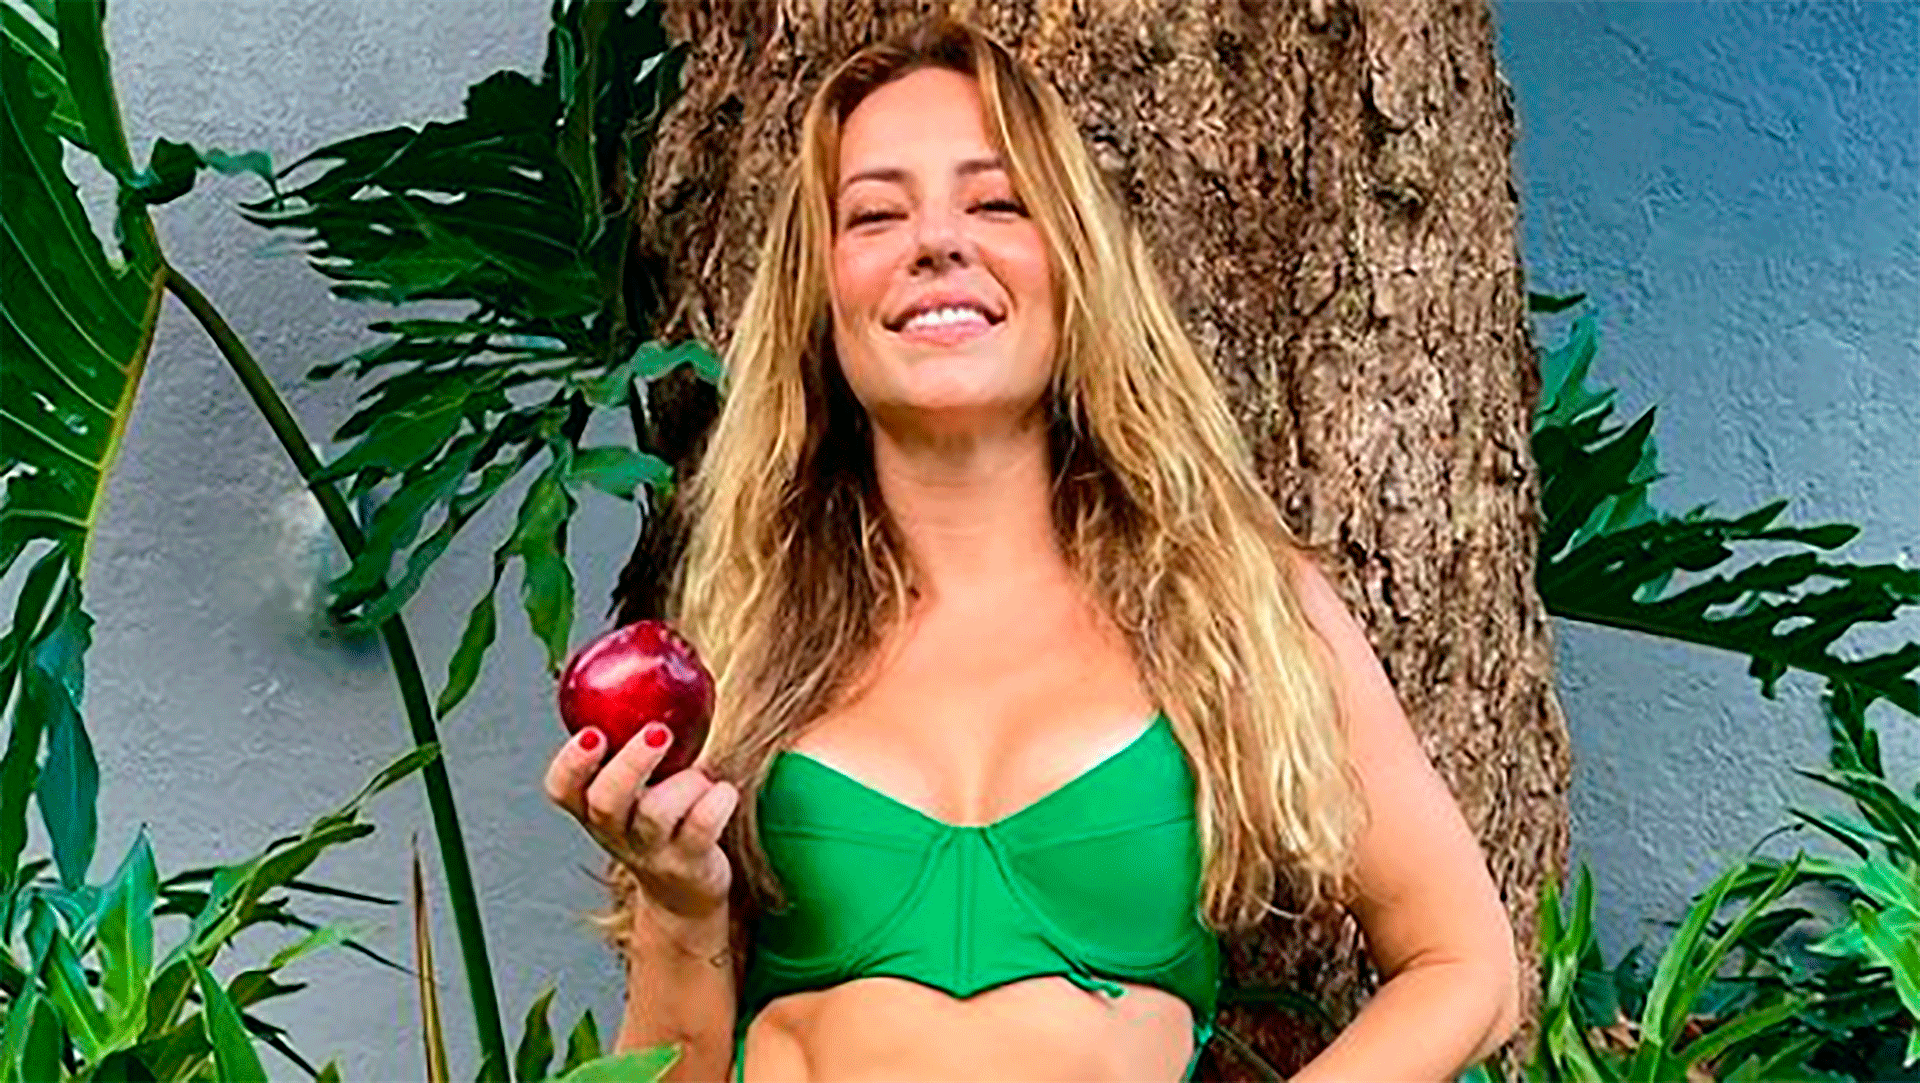 No meio da natureza, Paolla Oliveira aparece em ensaio com maçã e impressiona: “Eva” - Metropolitana FM